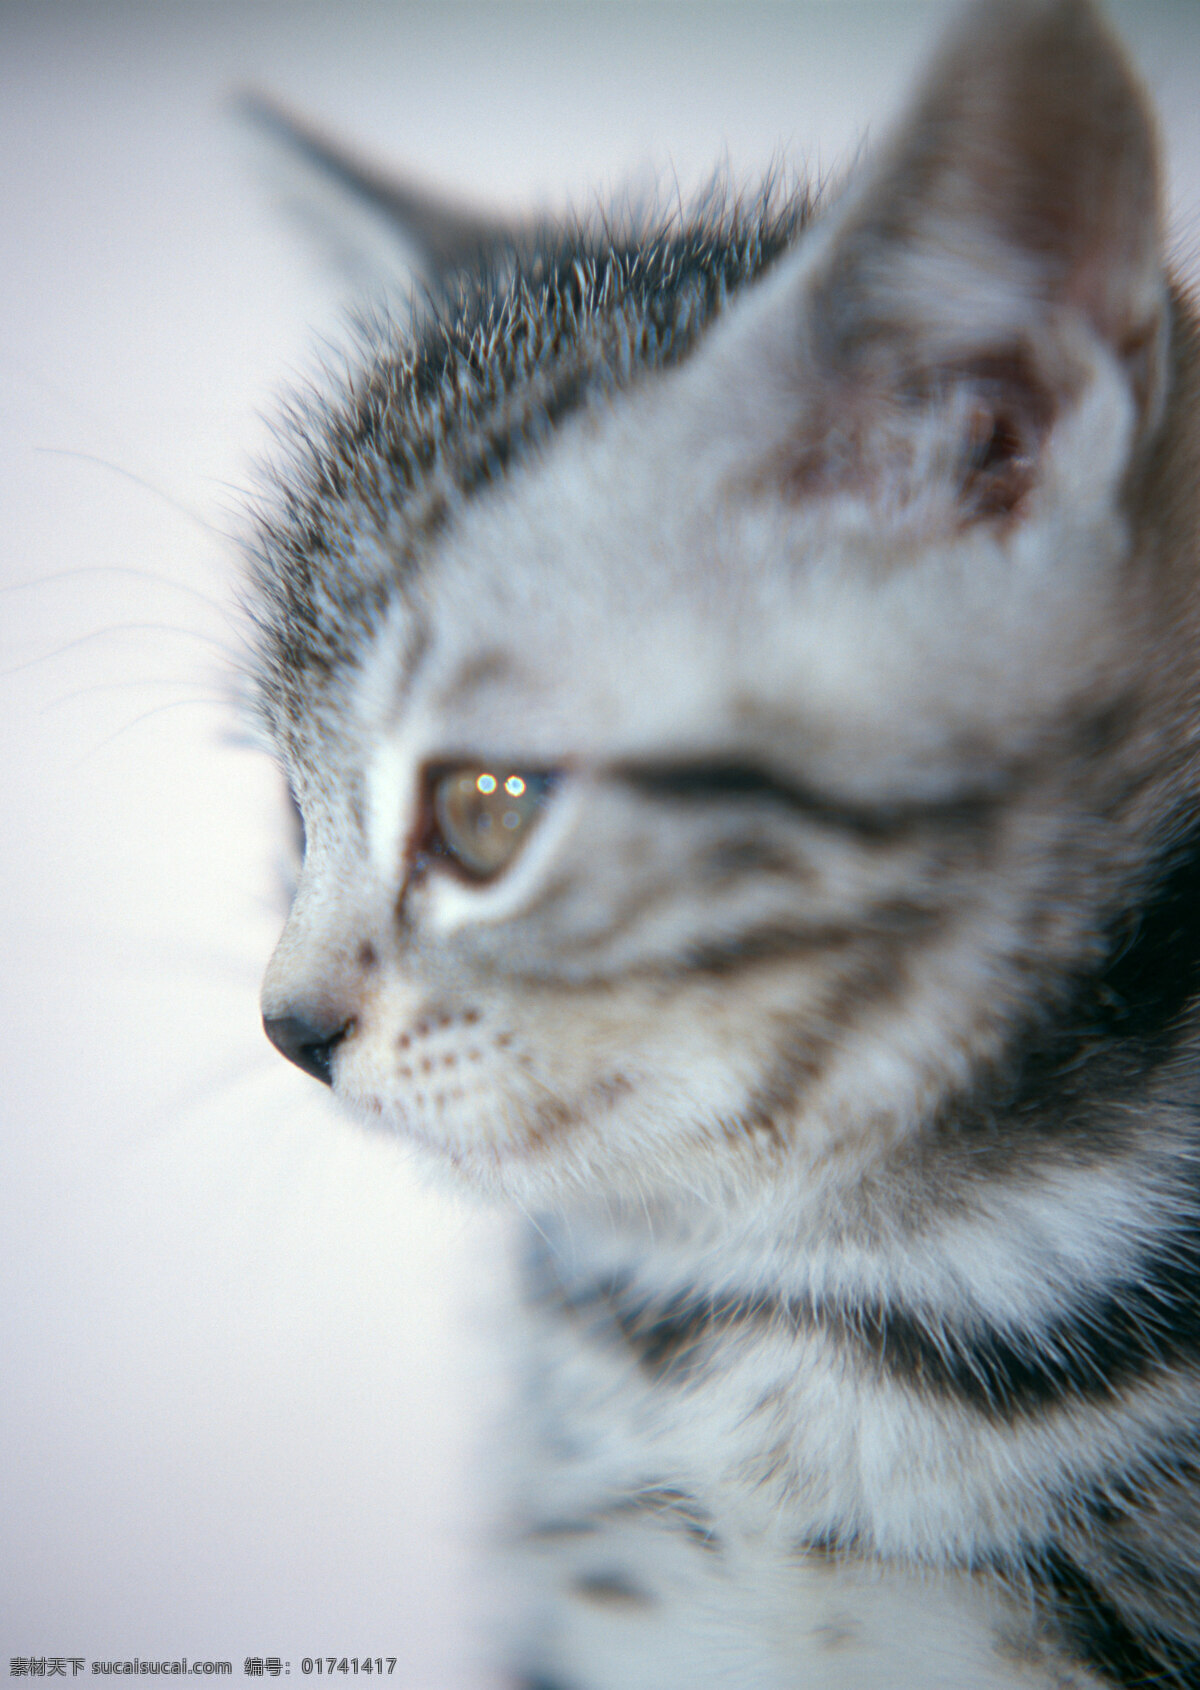 猫 头部 特写 小猫 动物摄影 宠物 可爱的猫 家猫 猫咪 小猫图片 家禽家畜 生物世界 猫咪图片